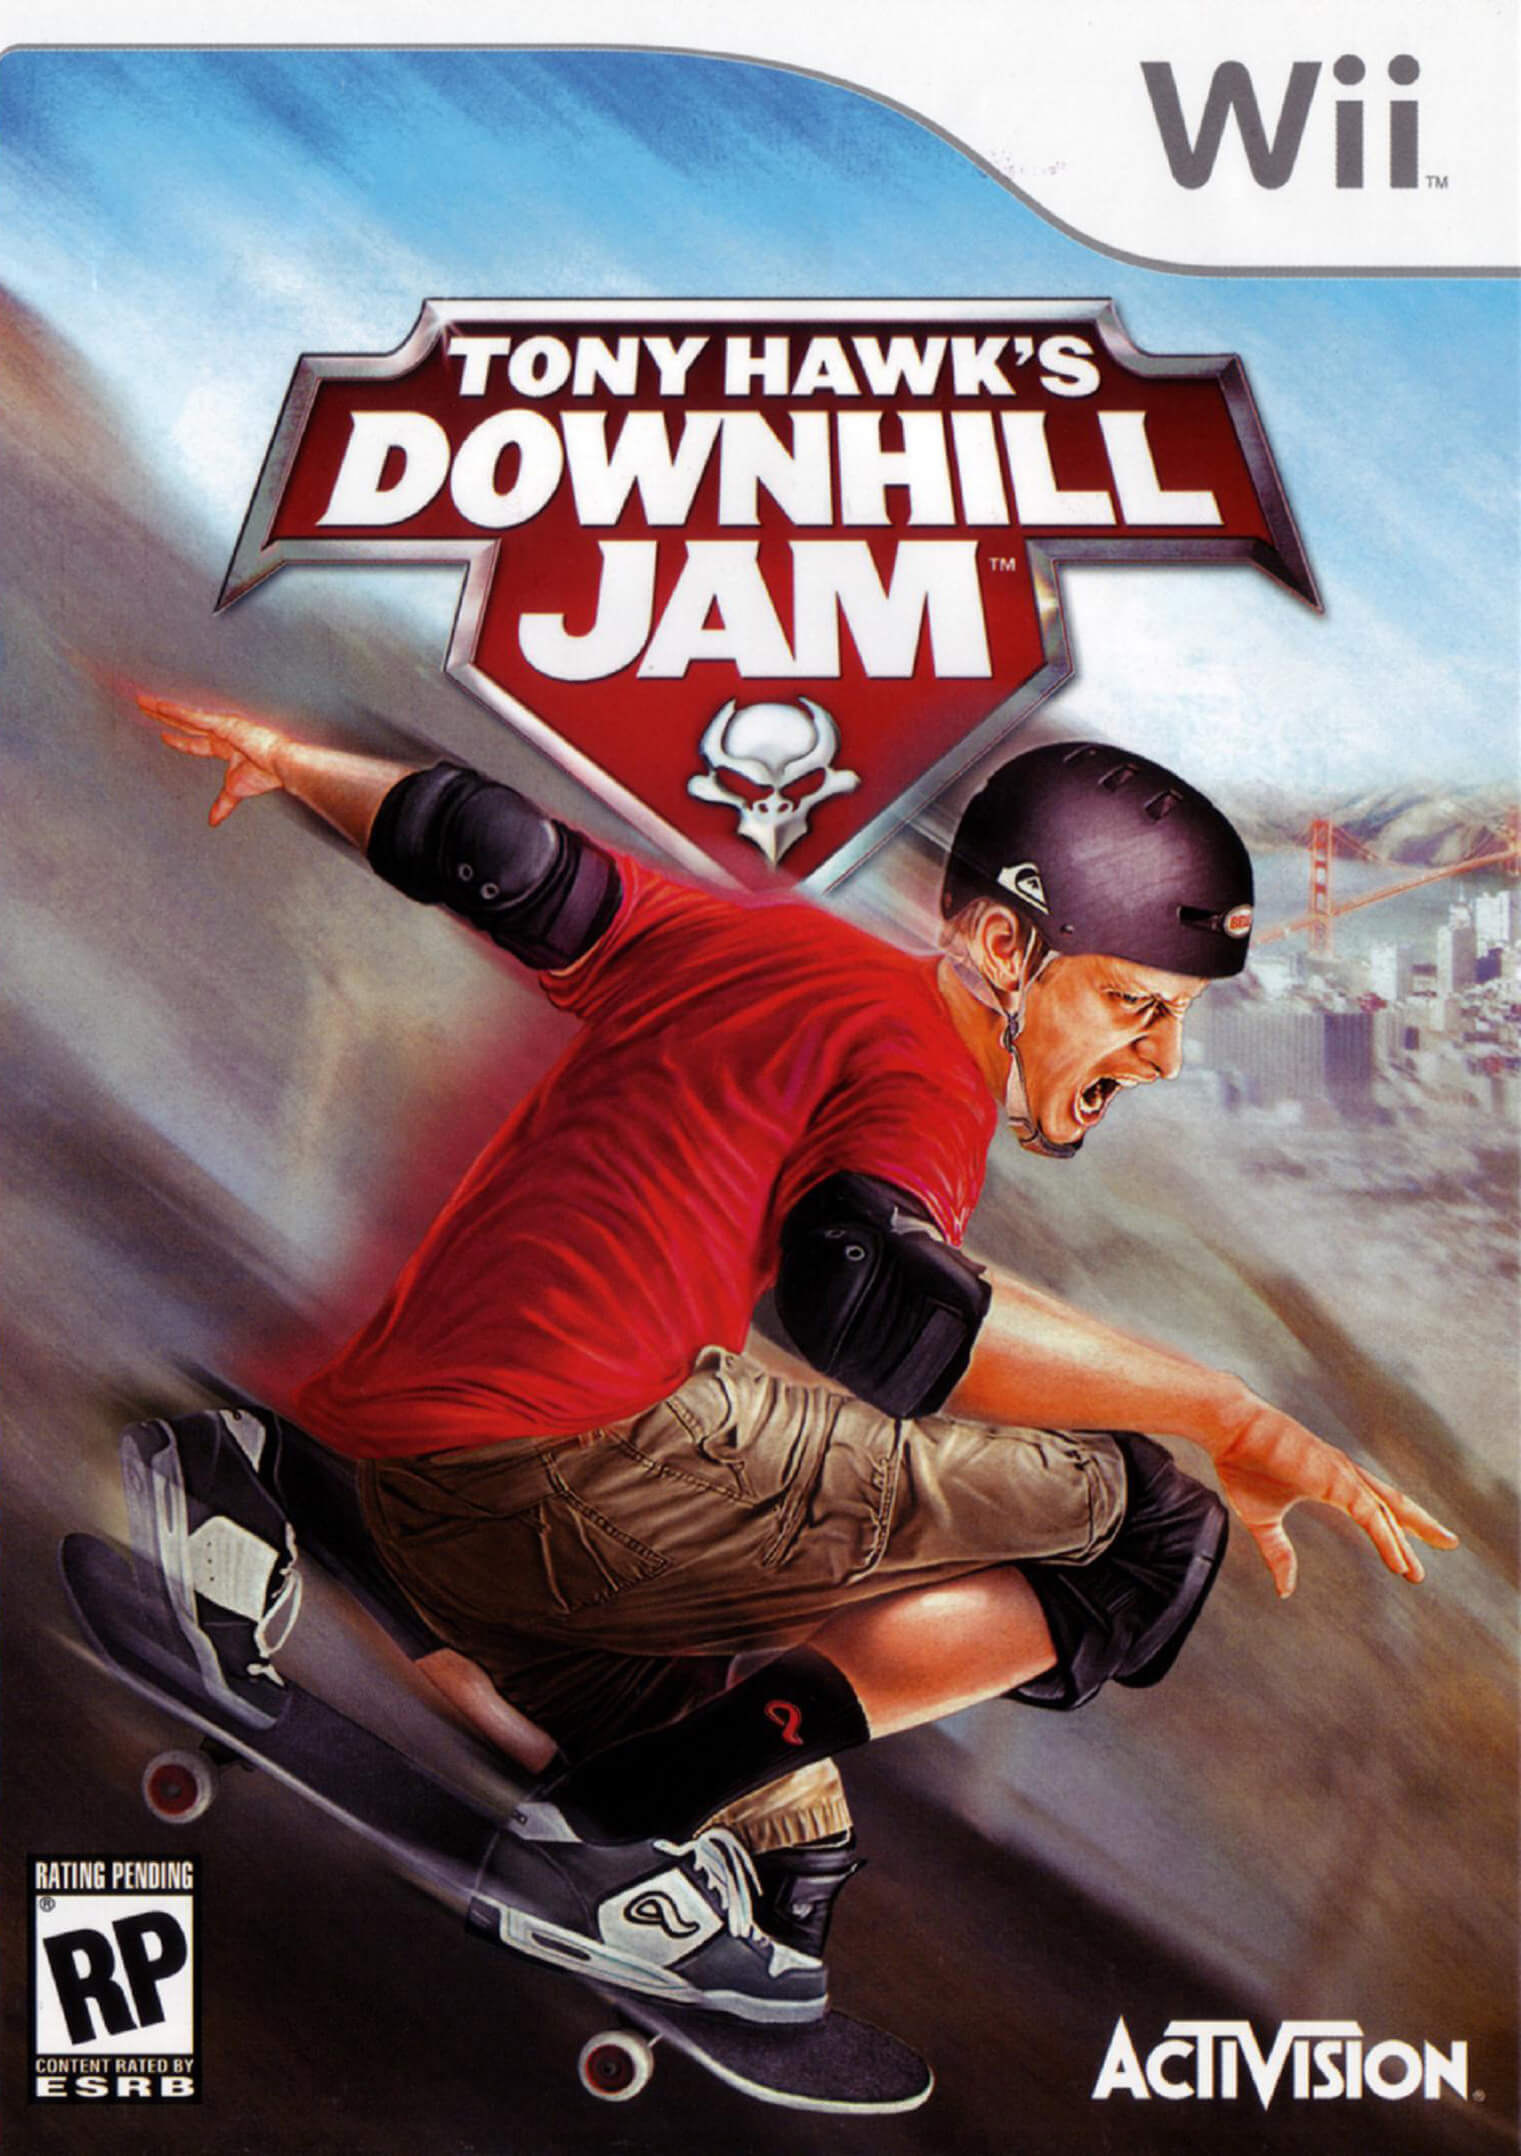 Tony Hawk’s Downhill Jam